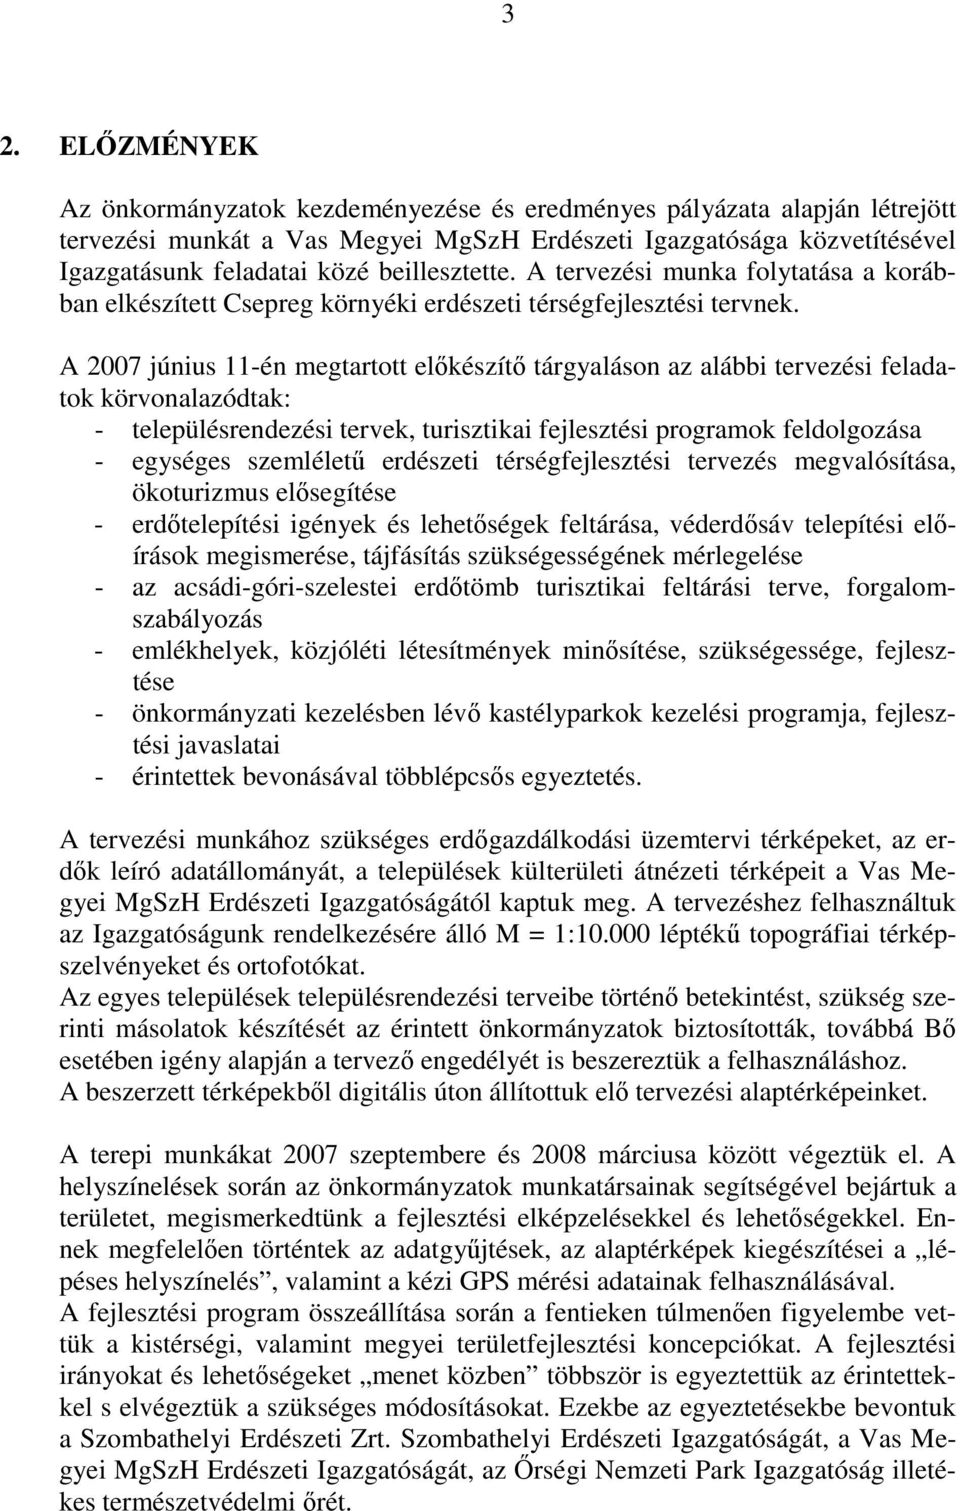 A 2007 június 11-én megtartott elıkészítı tárgyaláson az alábbi tervezési feladatok körvonalazódtak: - településrendezési tervek, turisztikai fejlesztési programok feldolgozása - egységes szemlélető